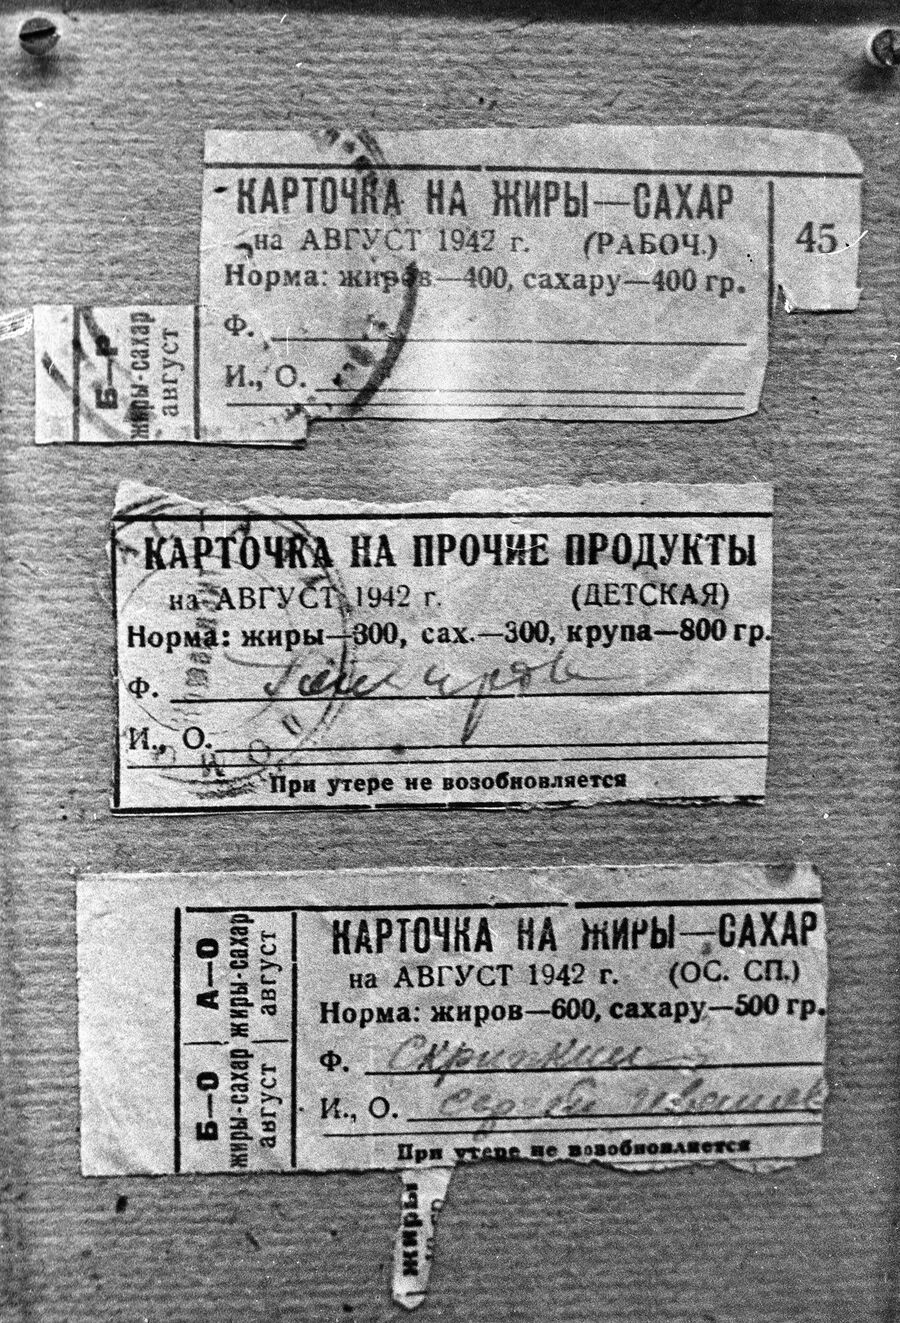 Продовольственные карточки 1942 года по которым жители СССР получали продовольствие